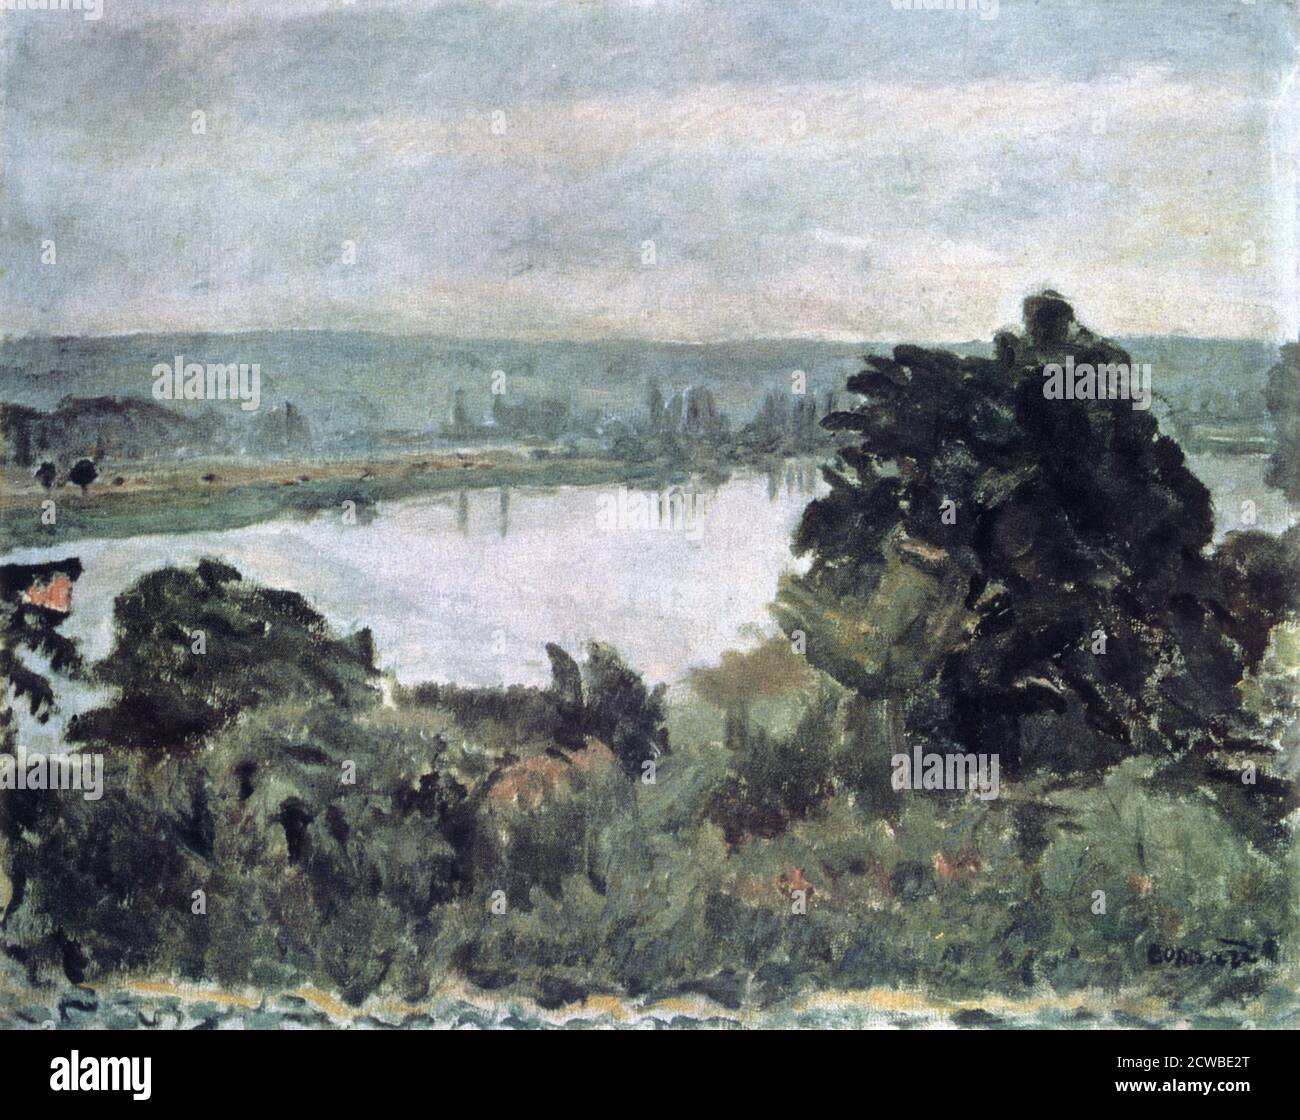 La Seine près de Vernon, c1911. Artiste: Pierre Bonnard. Bonnard était un peintre, illustrateur et graveur français, connu pour les qualités décoratives stylisées de ses peintures et son utilisation audacieuse de la couleur. Il a été membre fondateur du groupe post-impressionniste des peintres d'avant-garde les Nabis. Banque D'Images